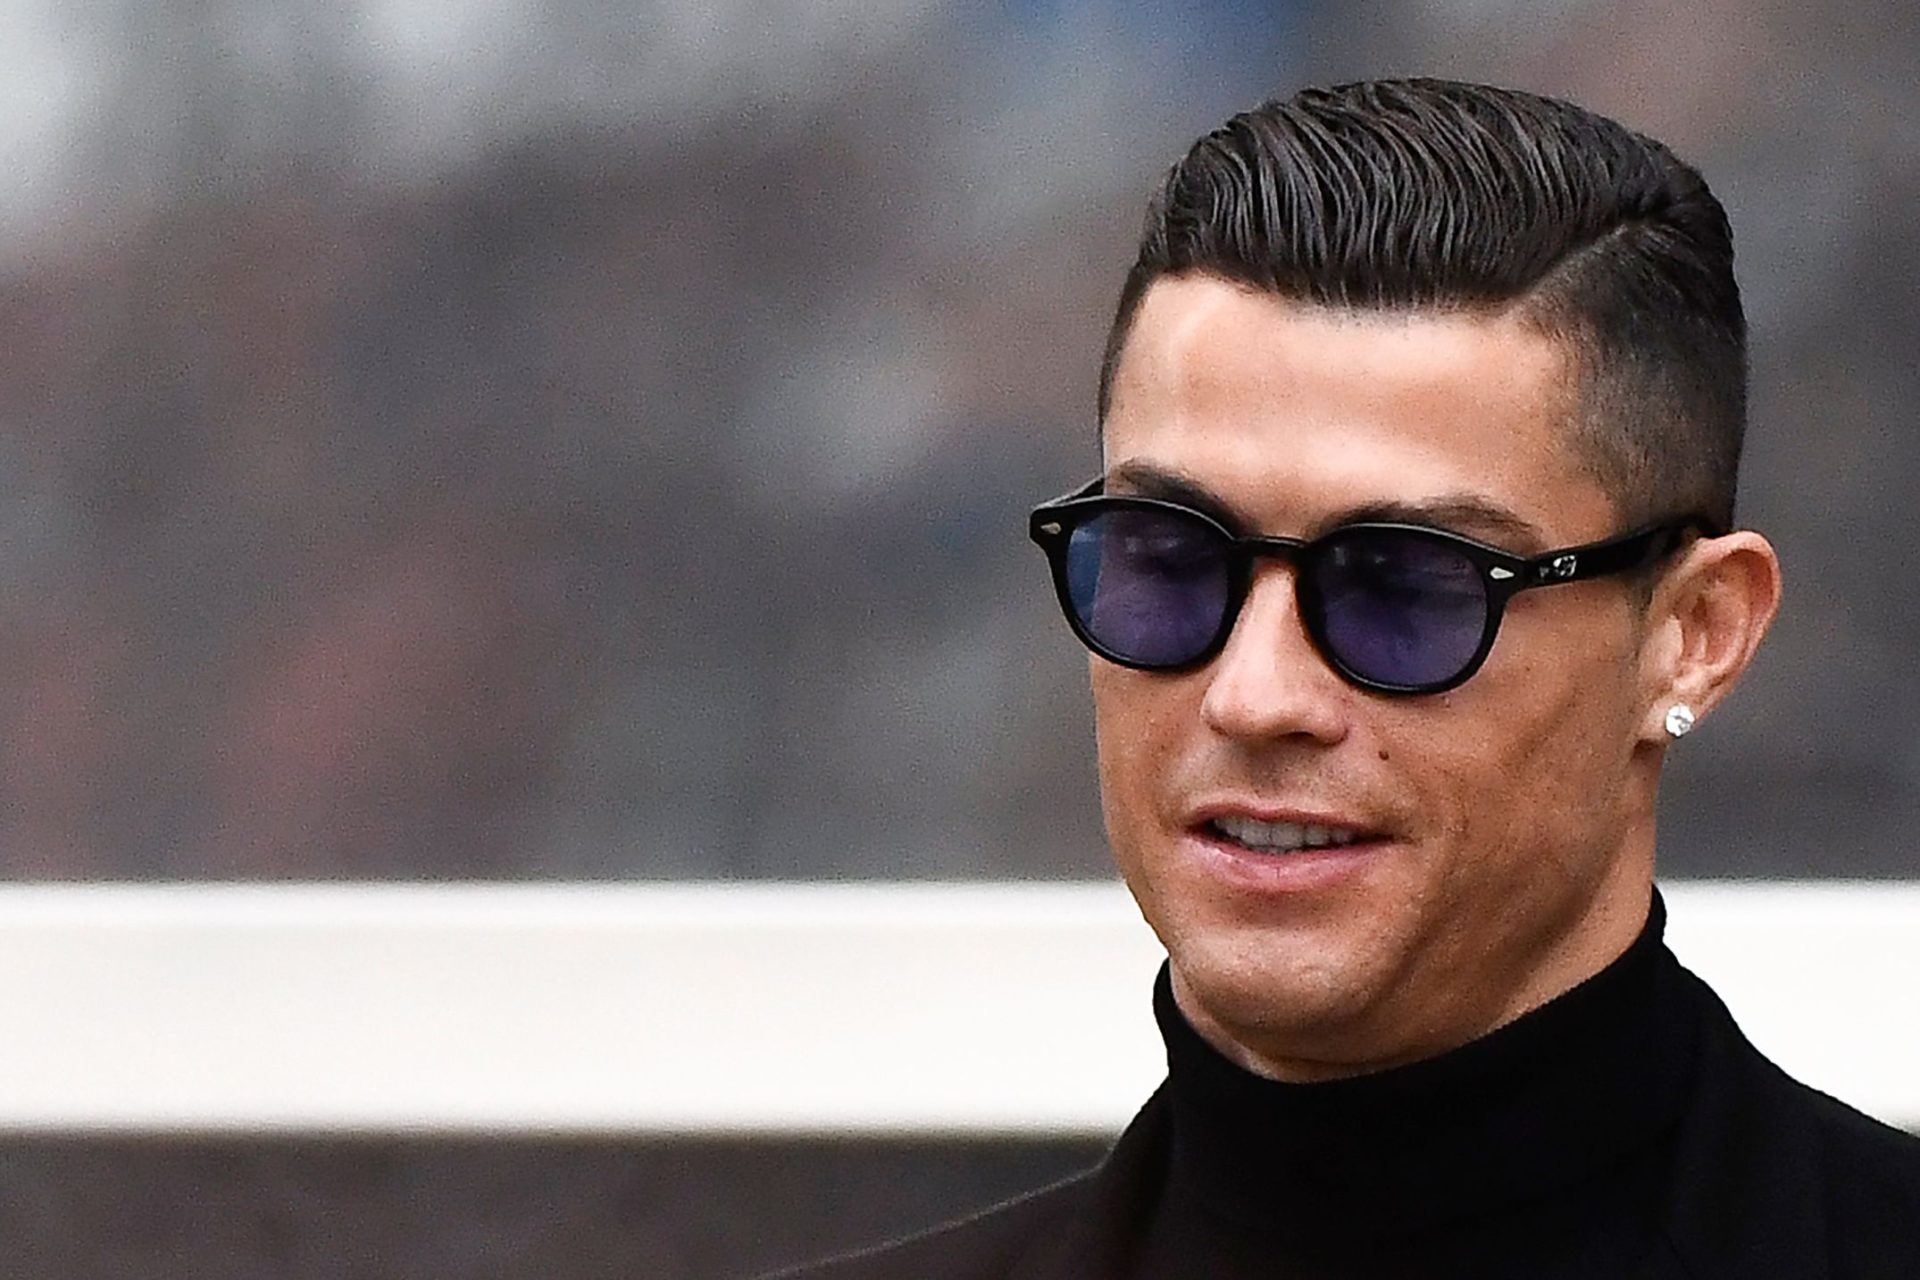 A fotografia de Ronaldo que está a ser fortemente criticada nas redes sociais | FOTO